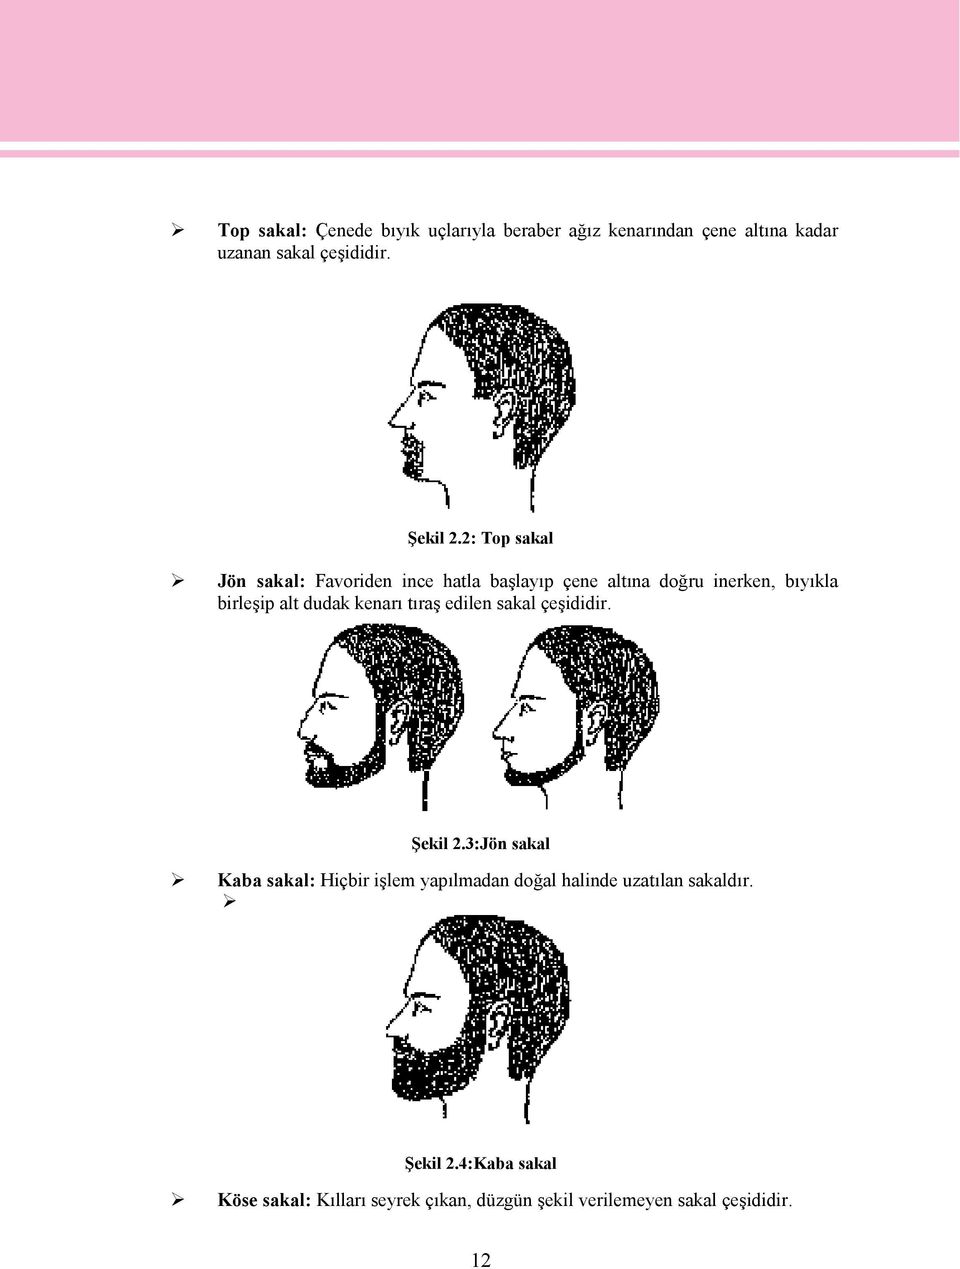 kenarı tıraş edilen sakal çeşididir. Şekil 2.